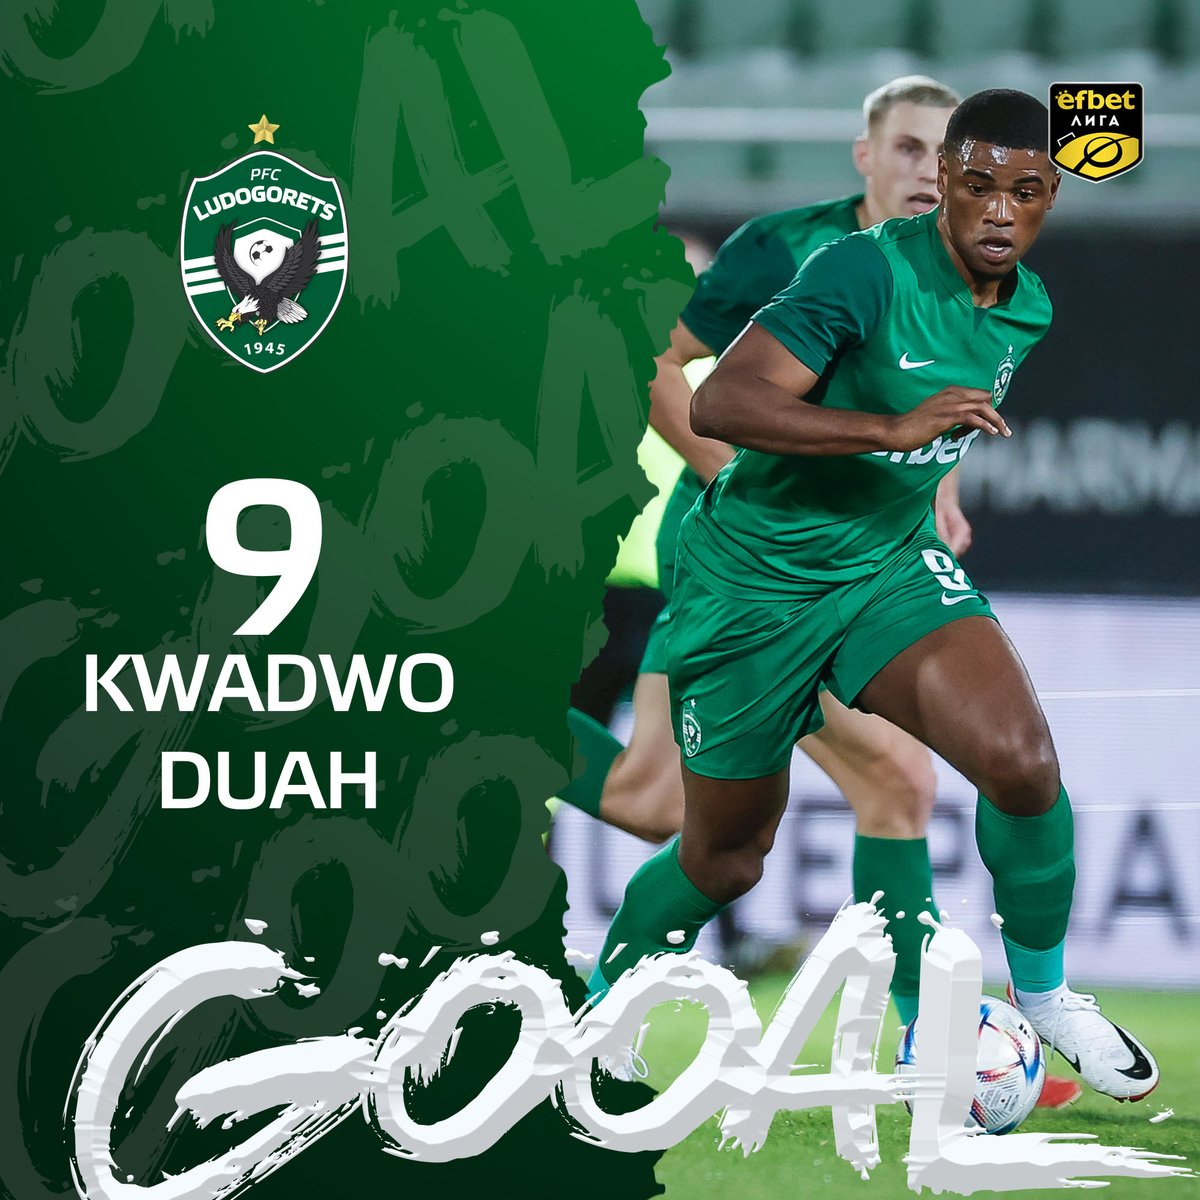 ⚽🏃‍ Kwadwo Duah scores for 1:0 against Arda (Kardzhali) #ludogorets #arda #ludogoretsarda